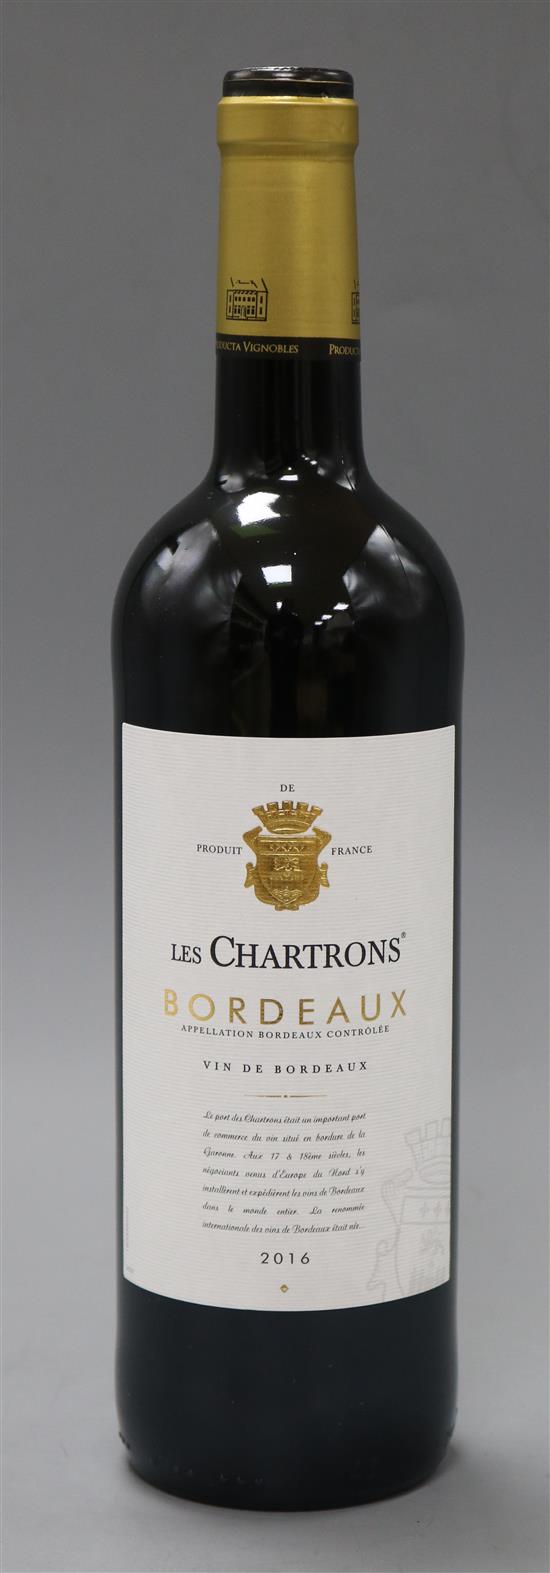 Five bottles of Bordeaux les chartrous, 2016